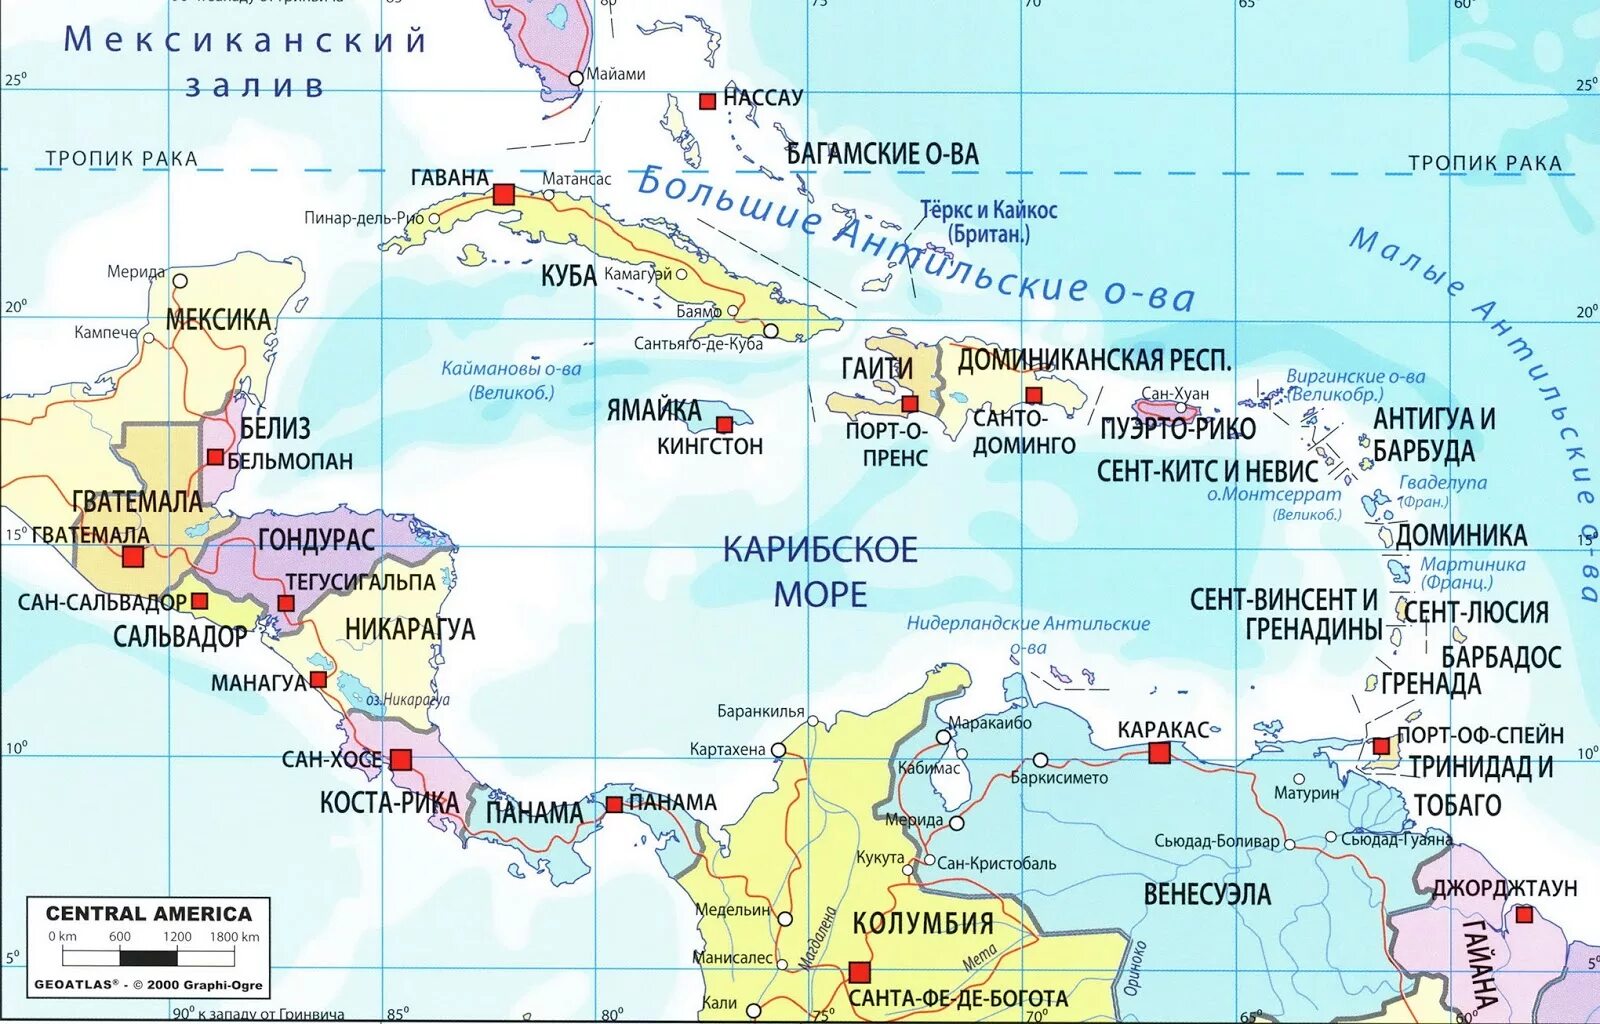 Острова Карибского моря на карте. Карибское море на карте Северной Америки. Острова Карибского бассейна на карте Северной Америки. Острова Карибского моря карта политическая. К какой стране относится остров